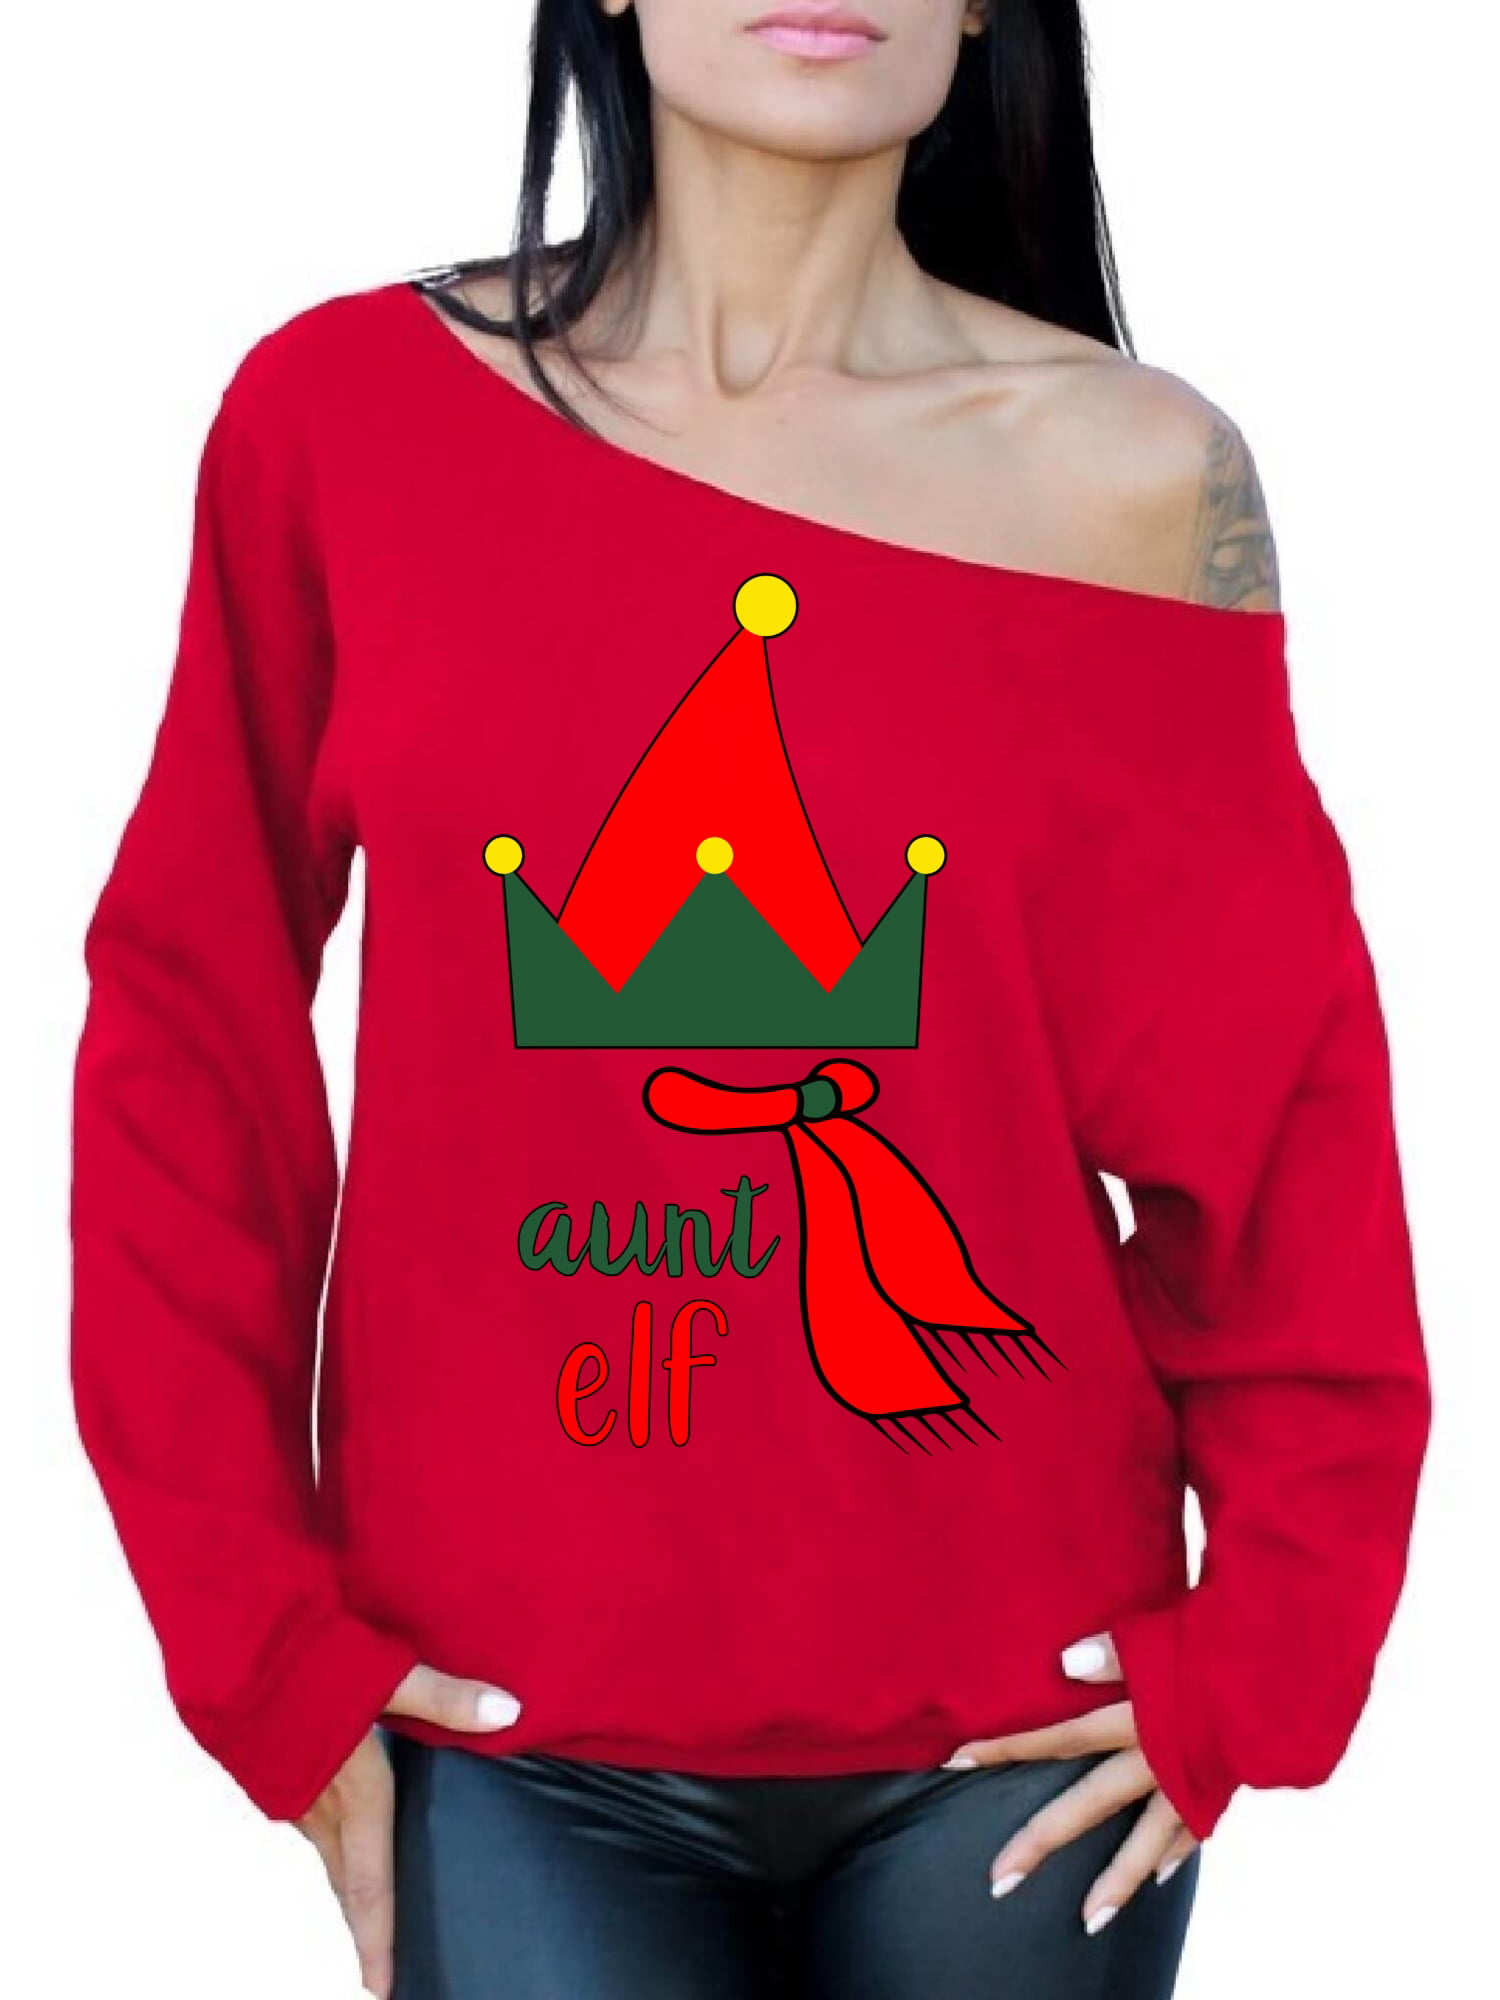 Awkward Styles Mommy Elf Sweatshirt Elf Christmas Sweater Ugly Christmas Elf Mom Gifts